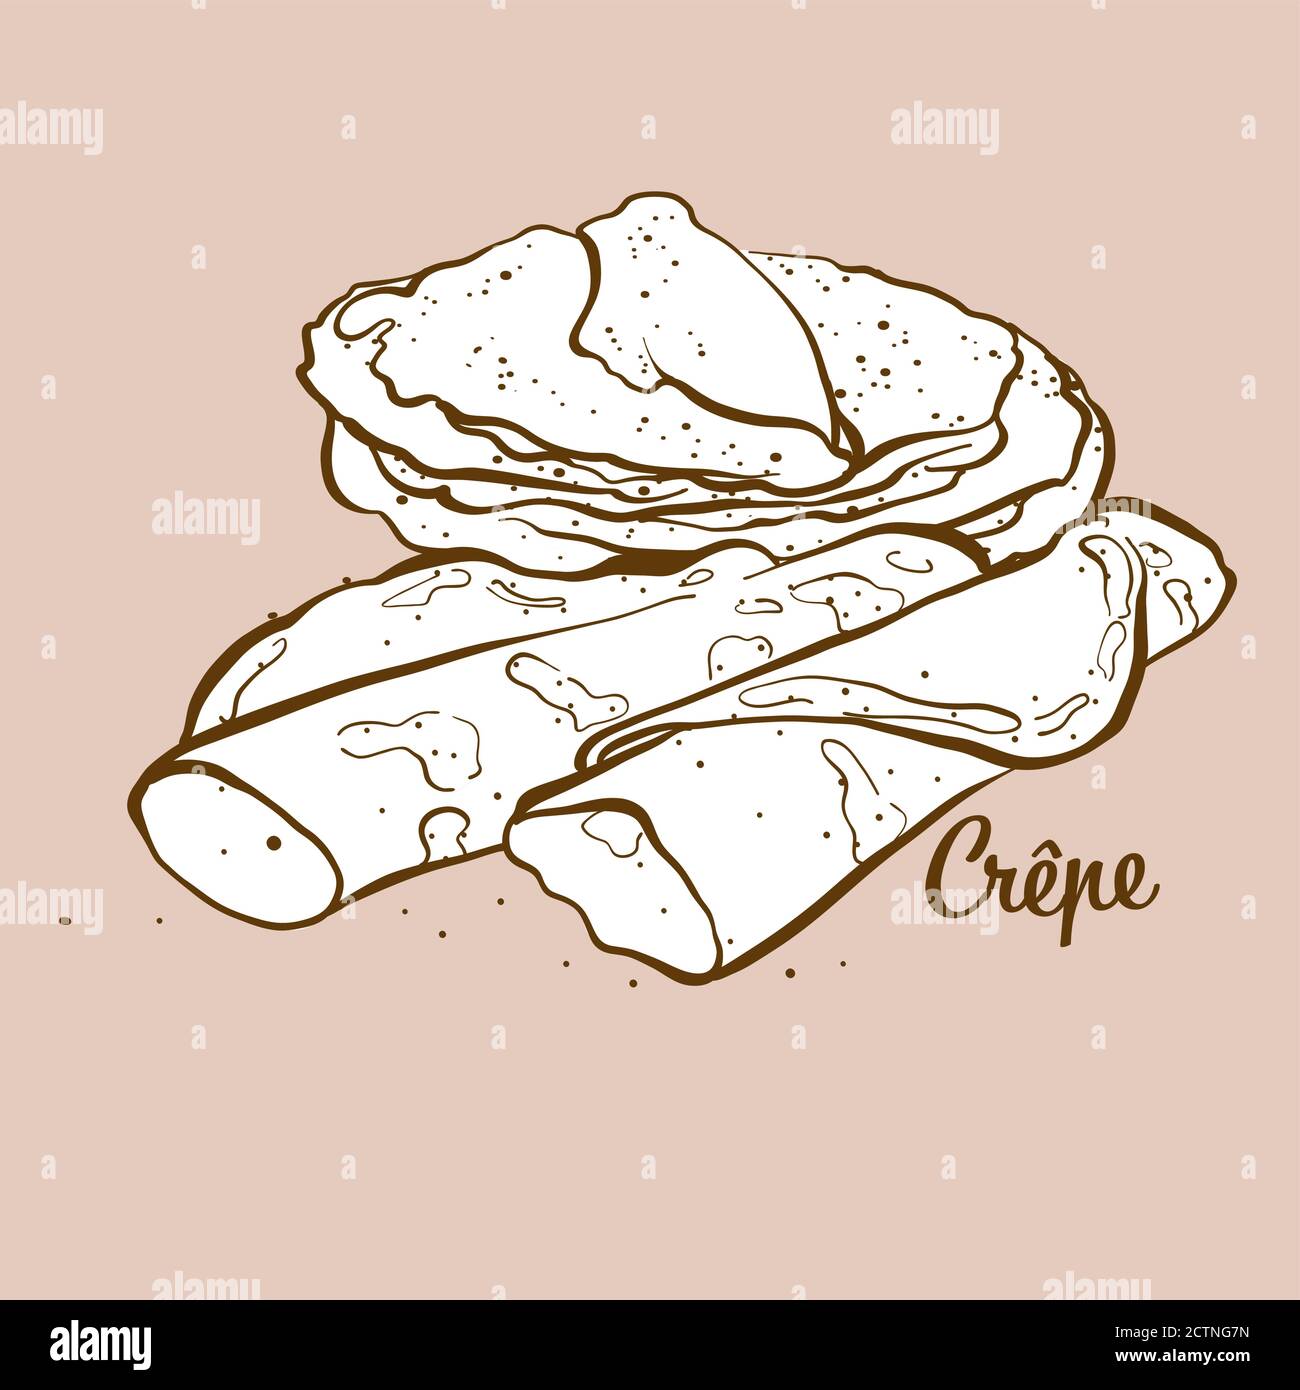 Ilustración de pan crepe dibujado a mano. Panqueque, generalmente conocido en Francia. Serie de dibujo vectorial. Ilustración del Vector